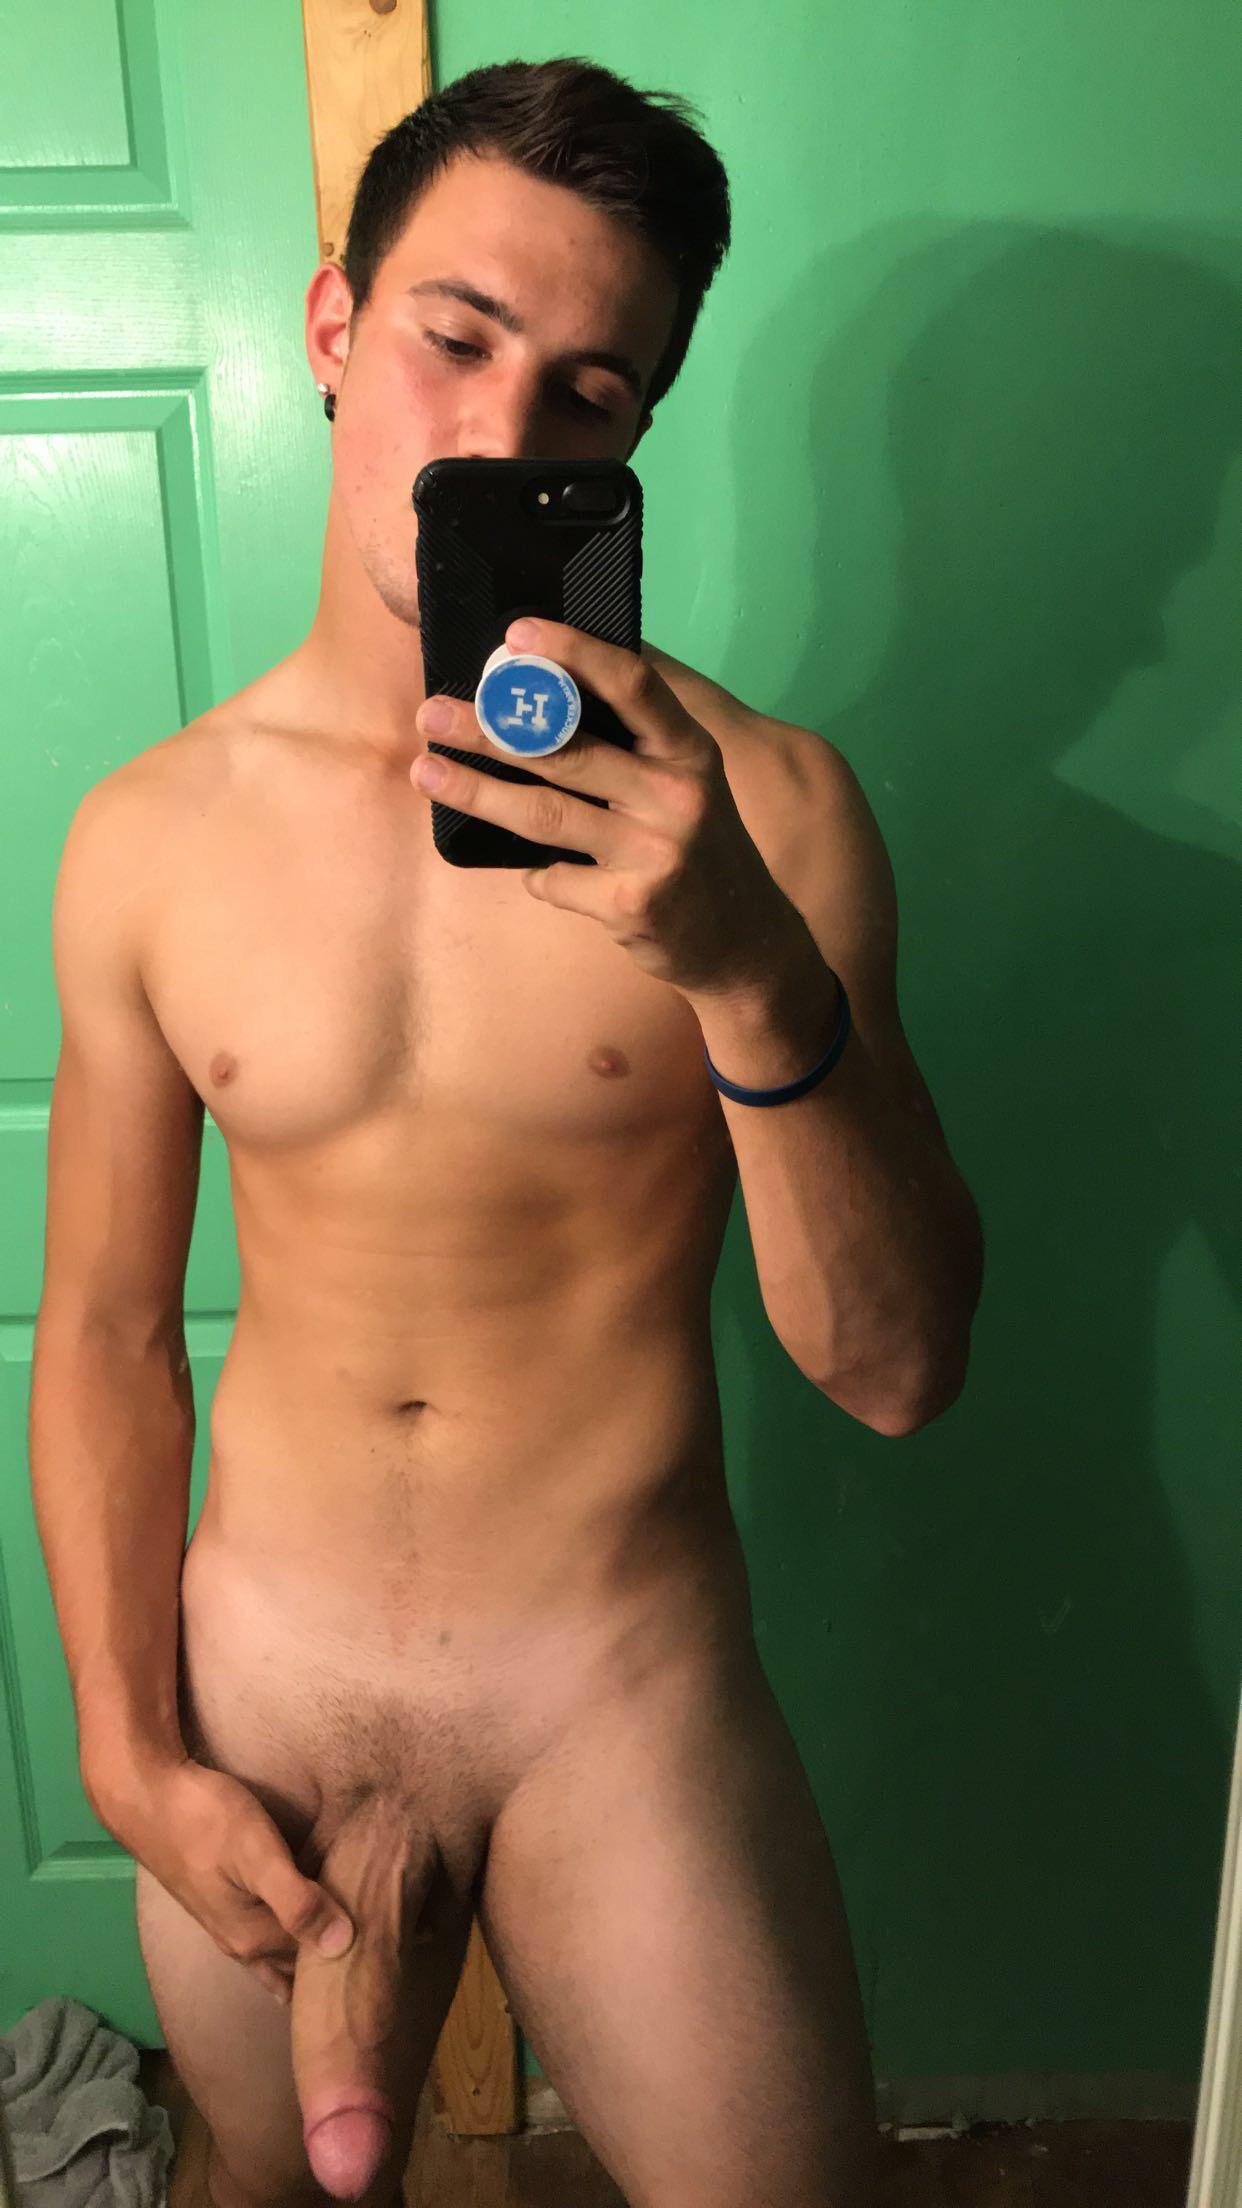 selfie naked man erection